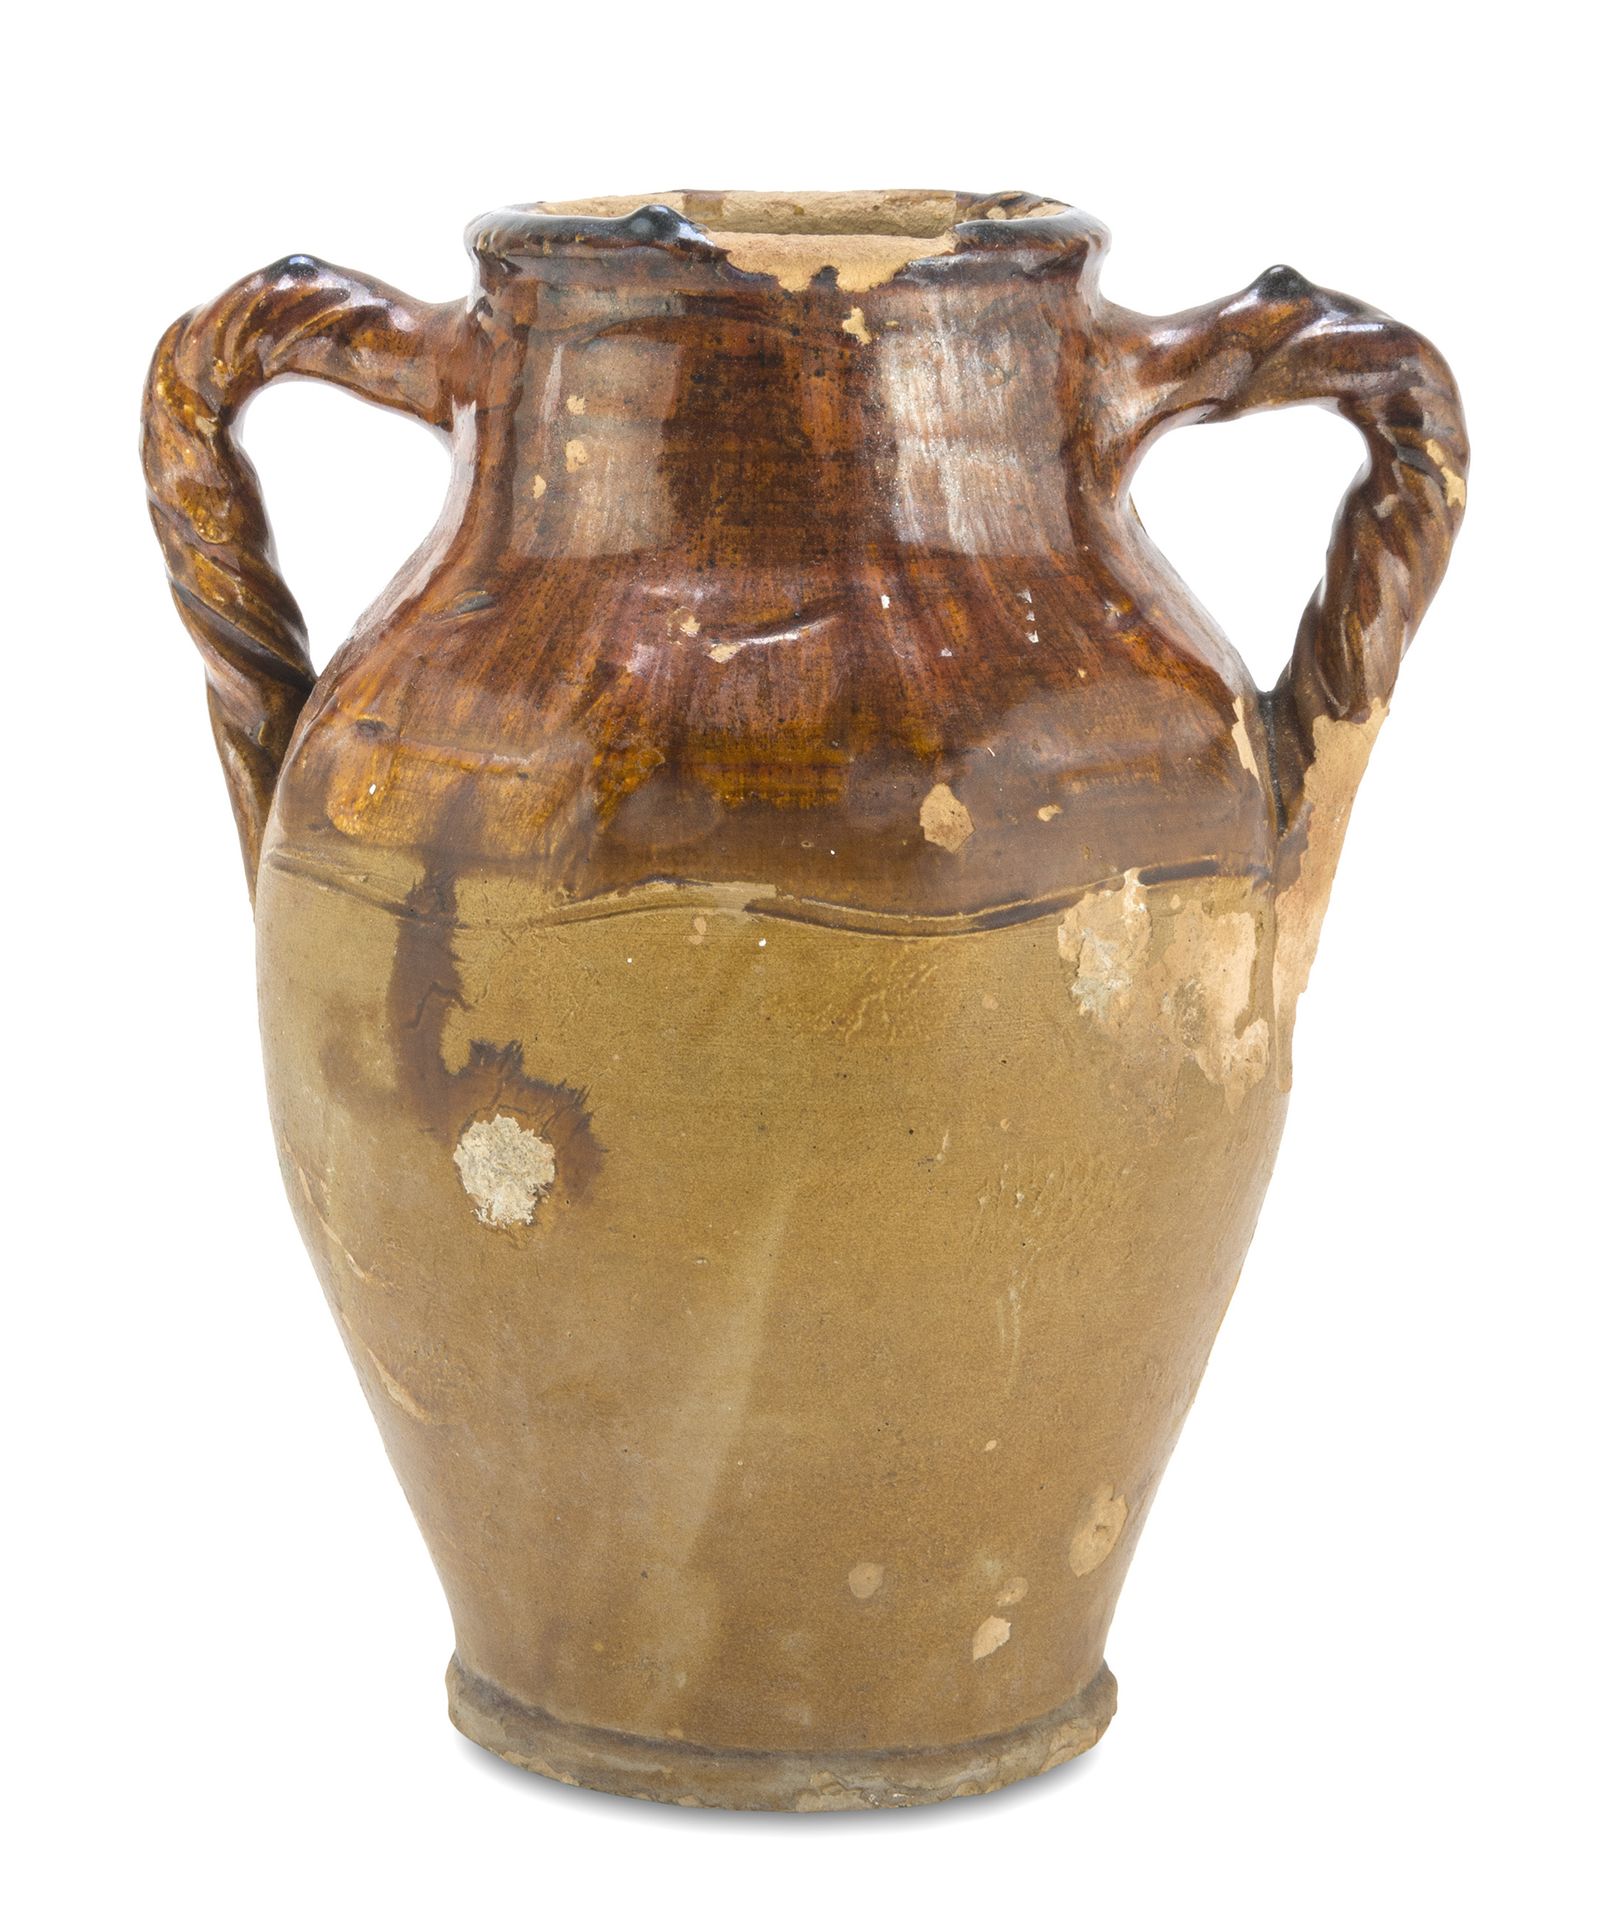 Null 陶罐，卡拉布里亚，19世纪末

部分施棕色釉，有扭曲的把手。

尺寸 cm. 27 x 23 x 17.

珐琅坠落。